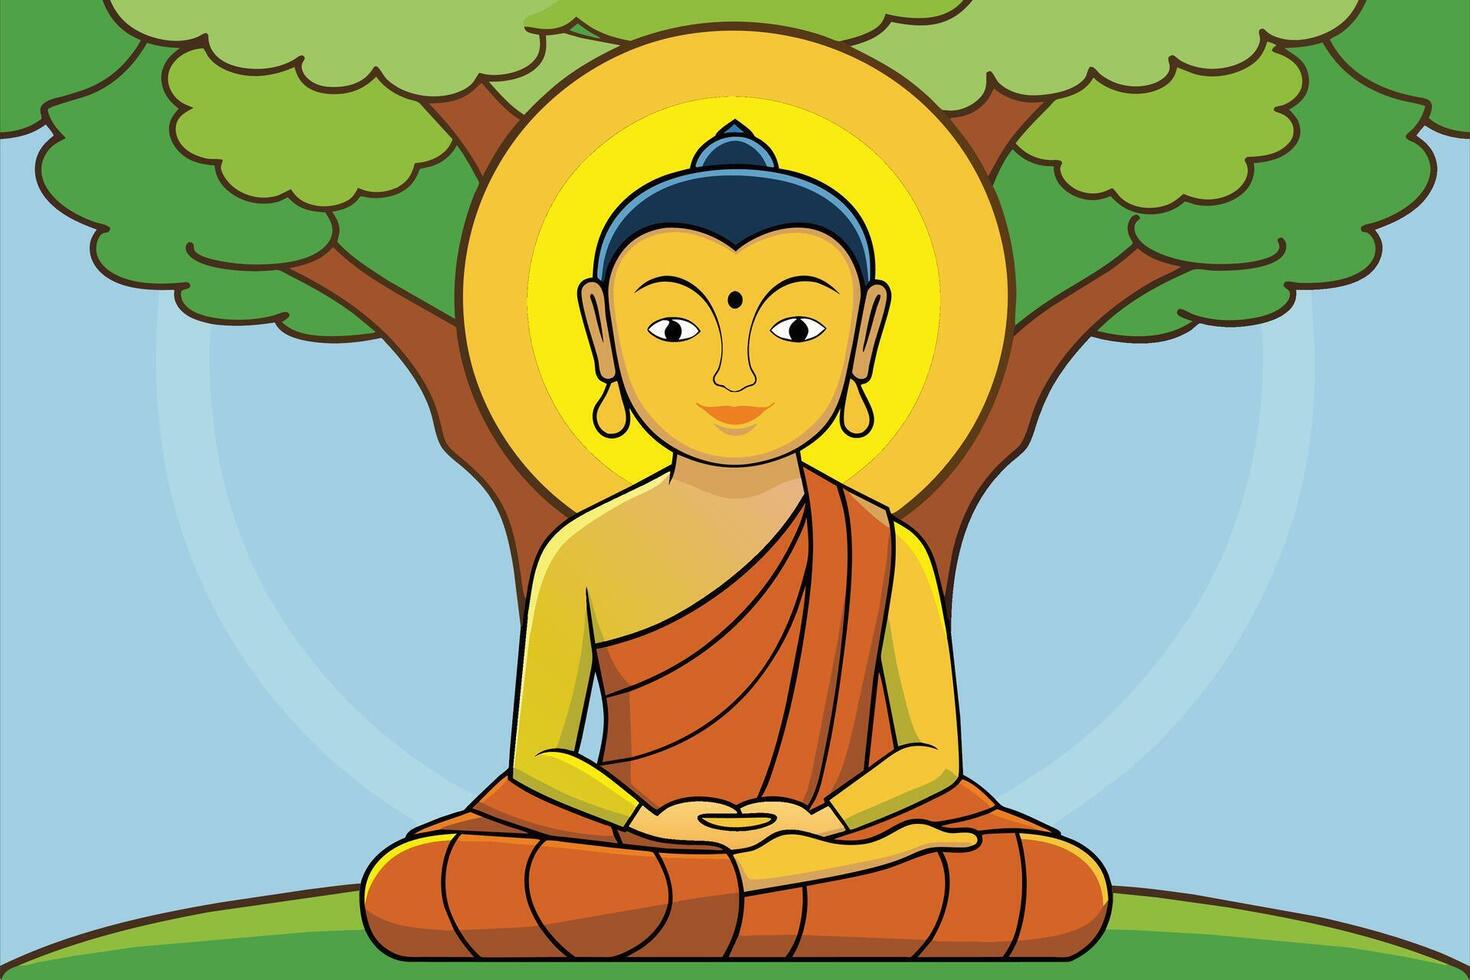 vektor illustration av siddhartha gautama upplyst under bodhi träd, upplysning av de buddha under de bodhi träd